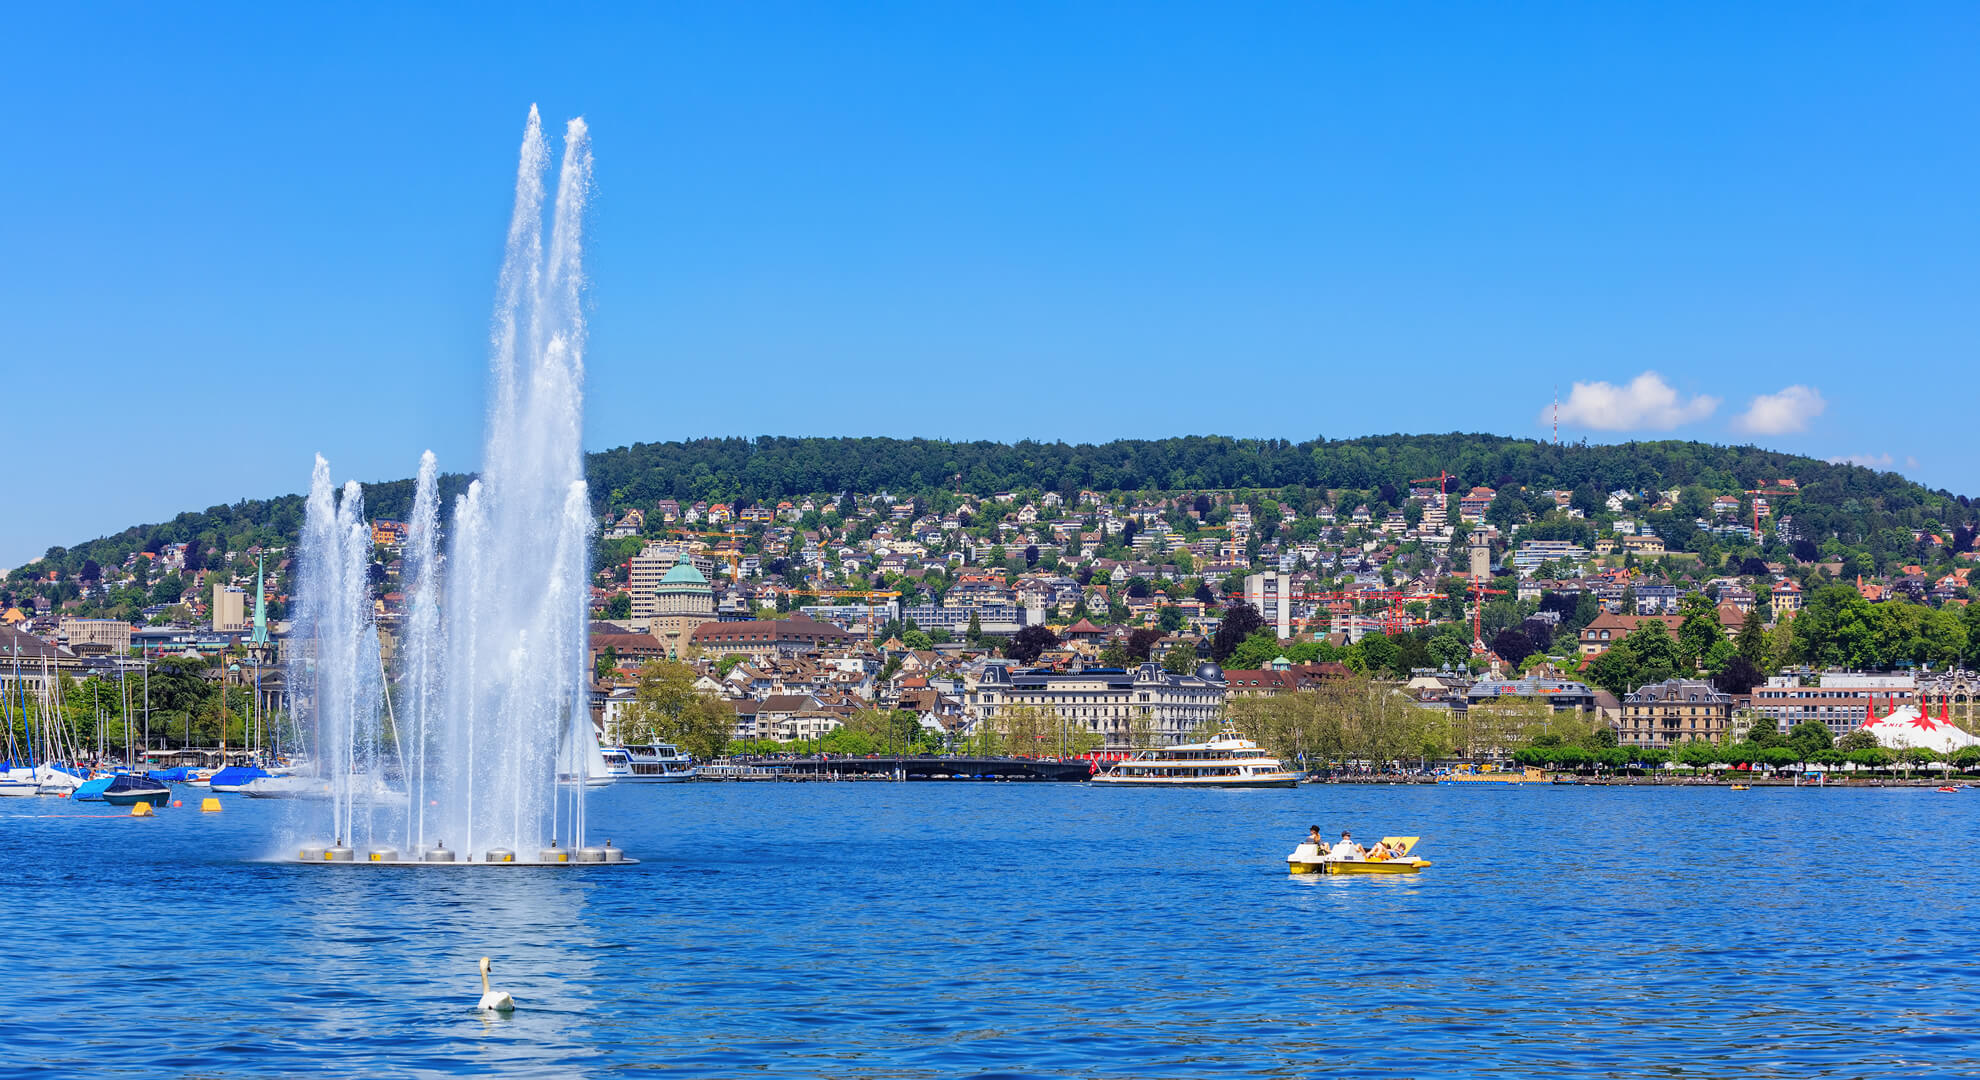 Lake Zurich in Switzerland